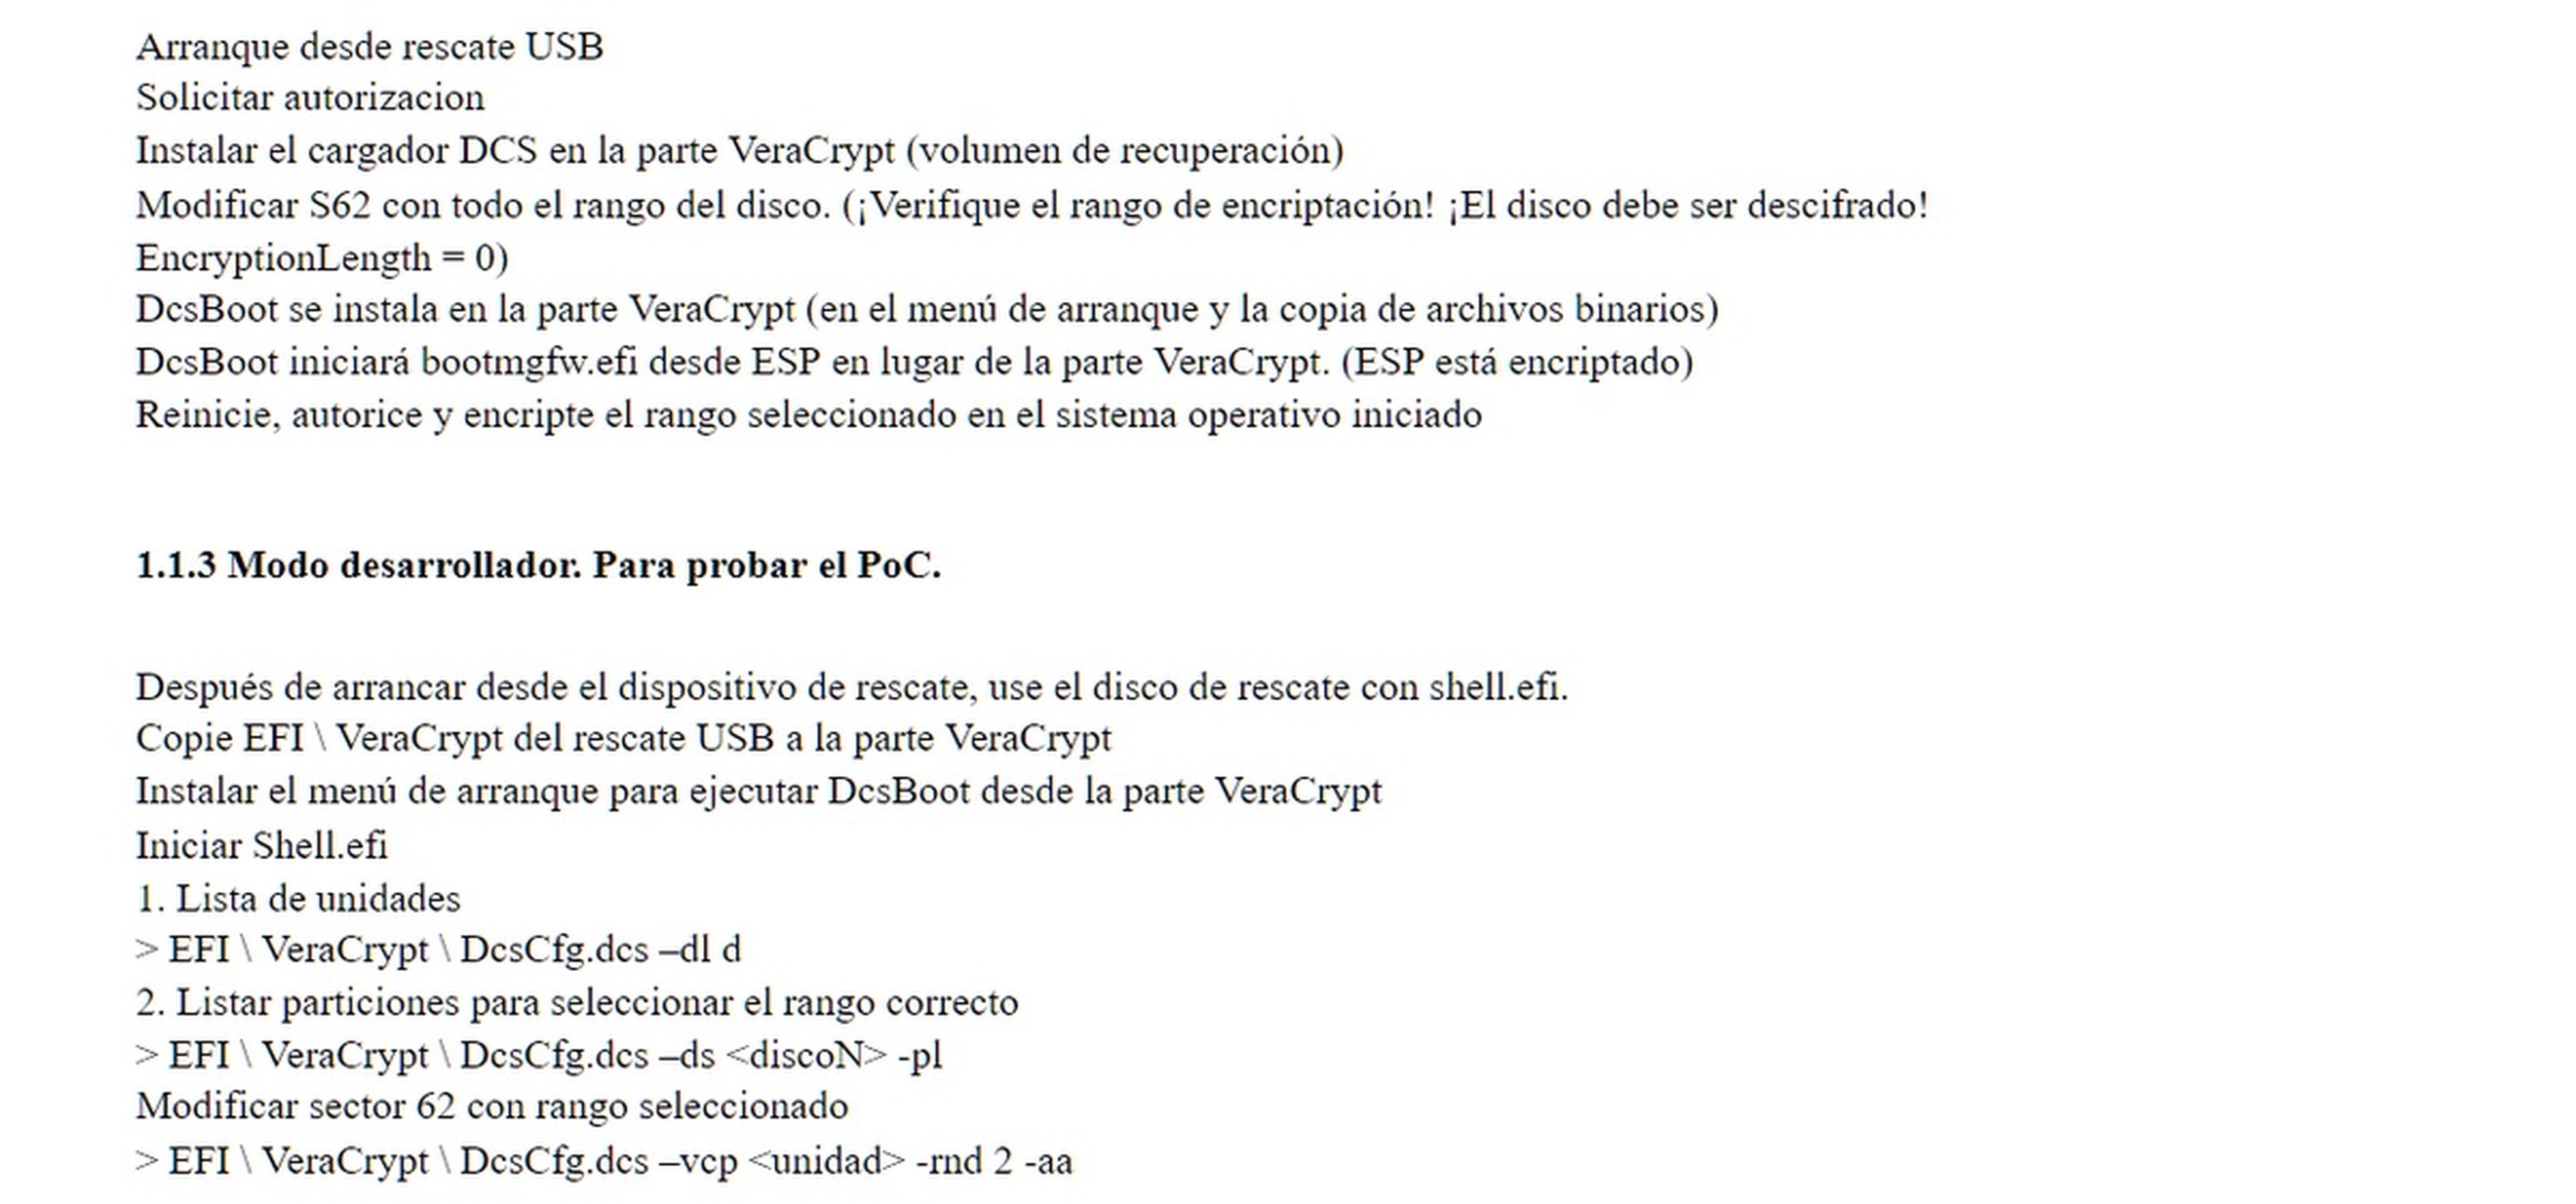 Diferentes formas de traducir un documento PDF